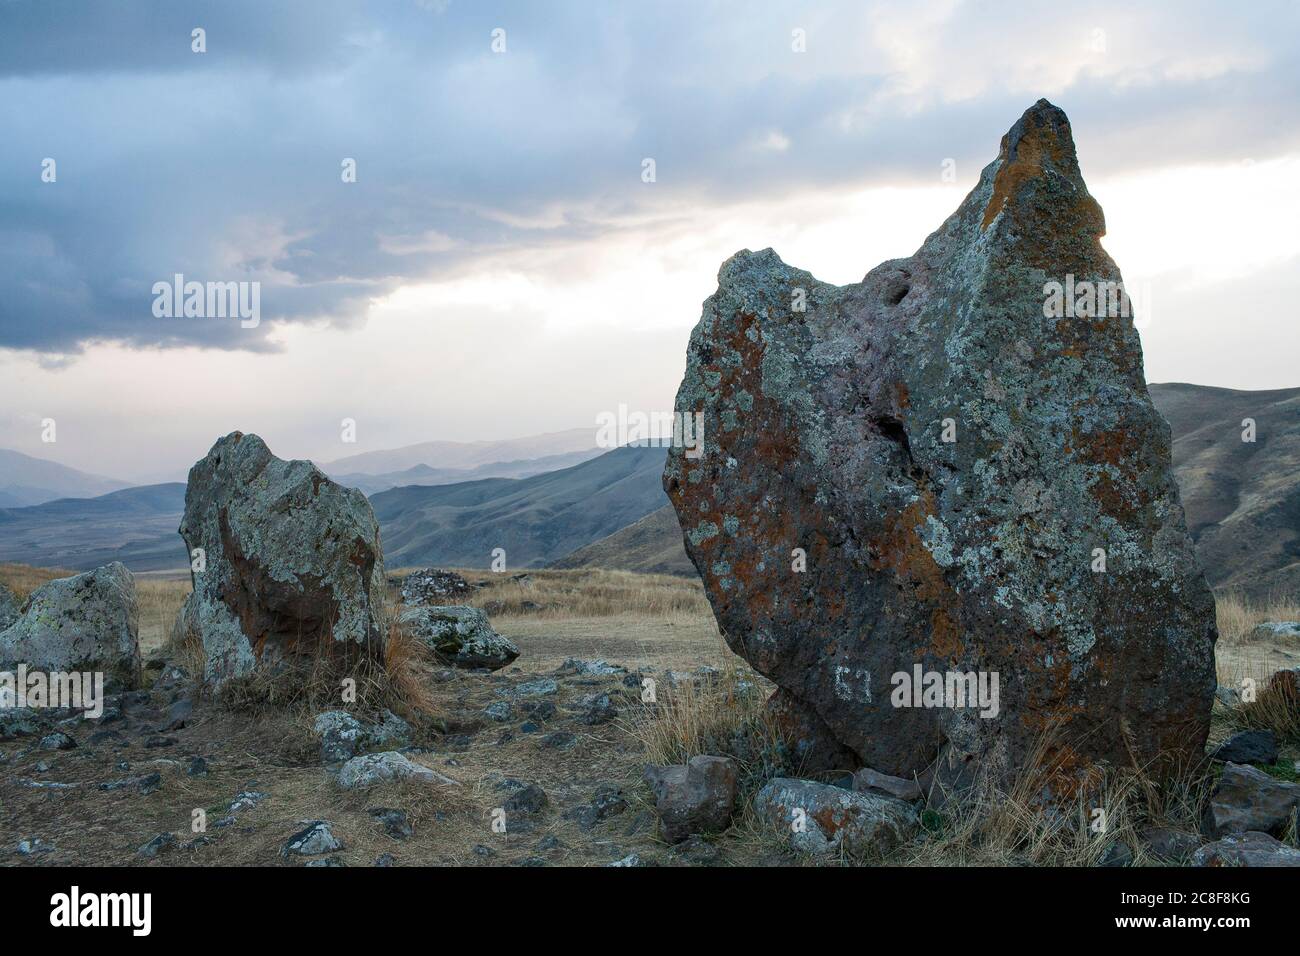 Carahunge, situado en una llanura dramática, es un sitio arqueológico prehistórico cerca de la ciudad de Sisian en la provincia de Syunik de Armenia. Foto de stock